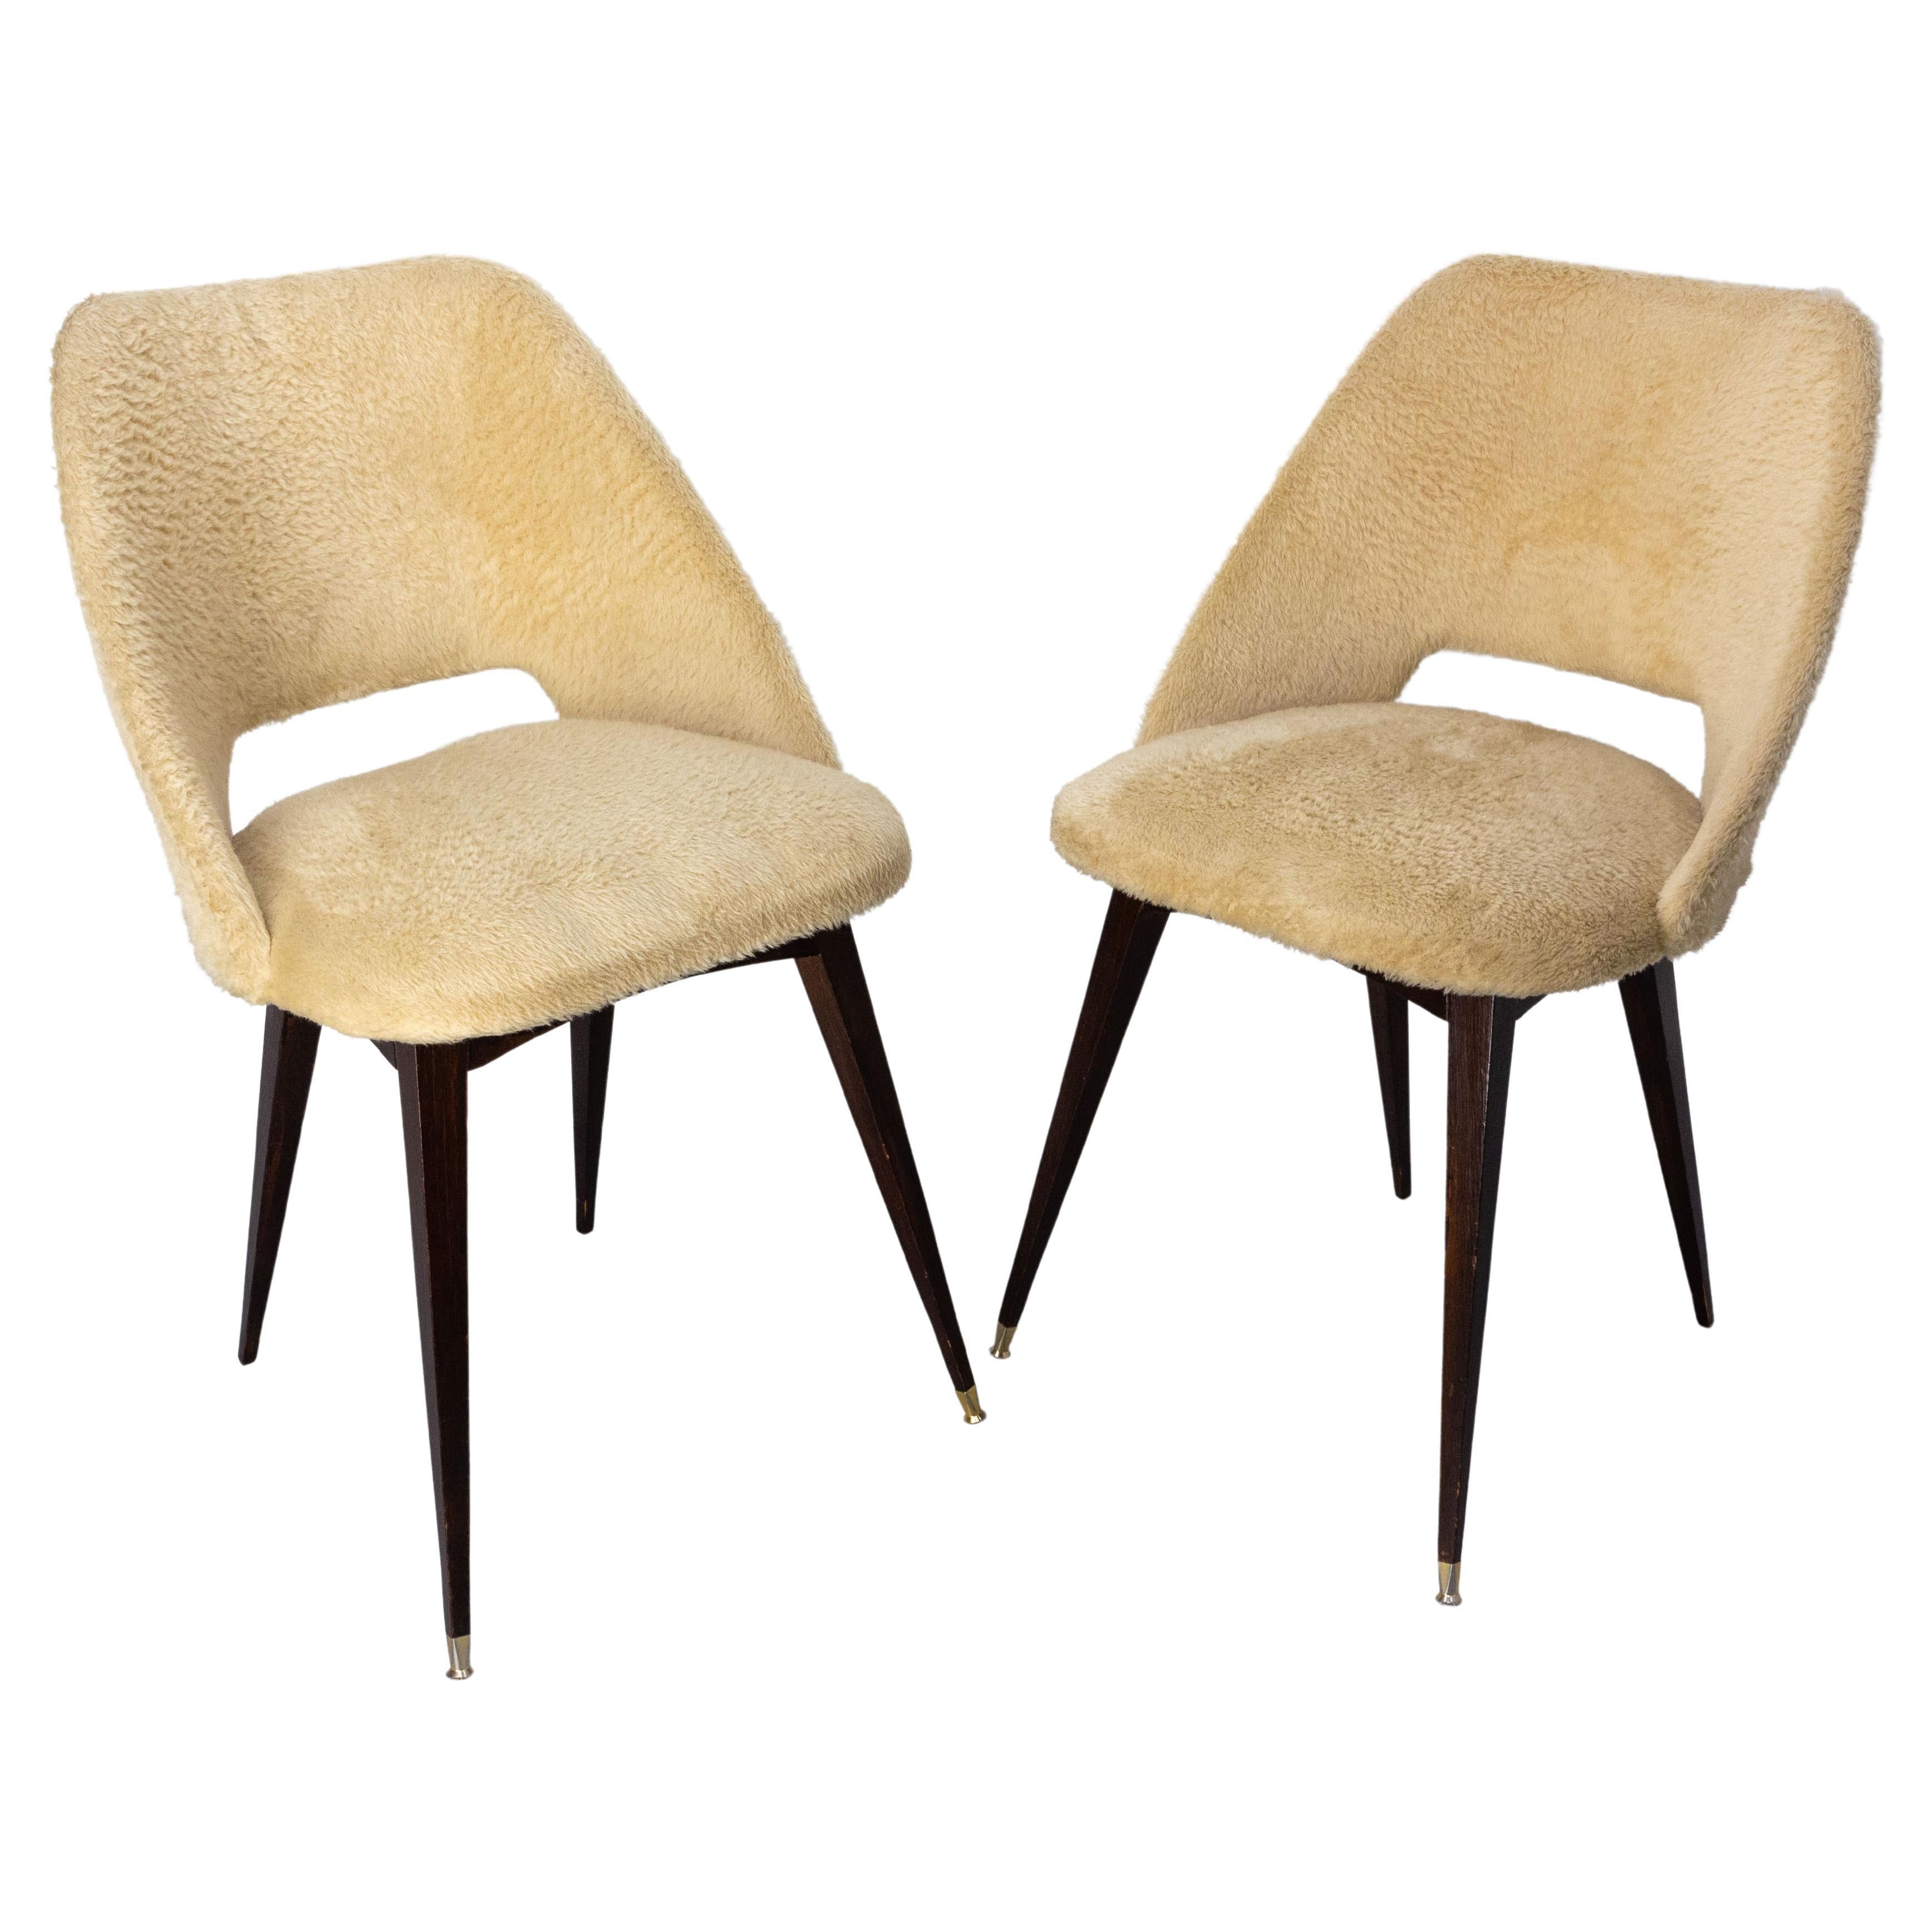 Deux chaises françaises du milieu du siècle Wood et tissu, typiques des années soixante-dix circa 1970